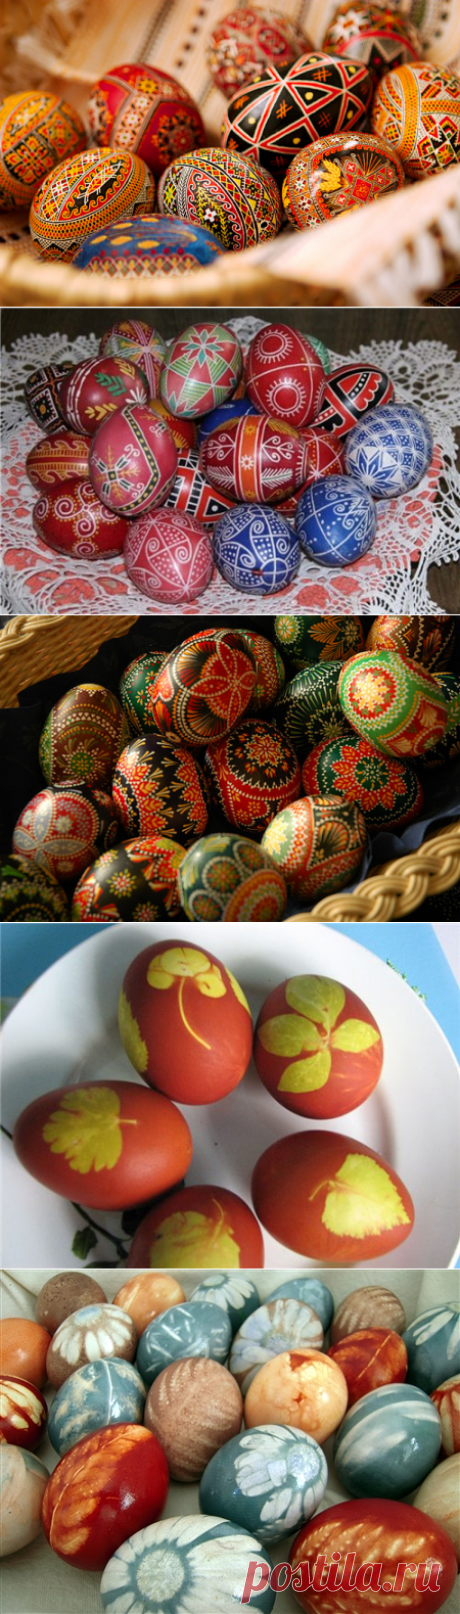 Виды росписи и покраски яиц на Пасху.